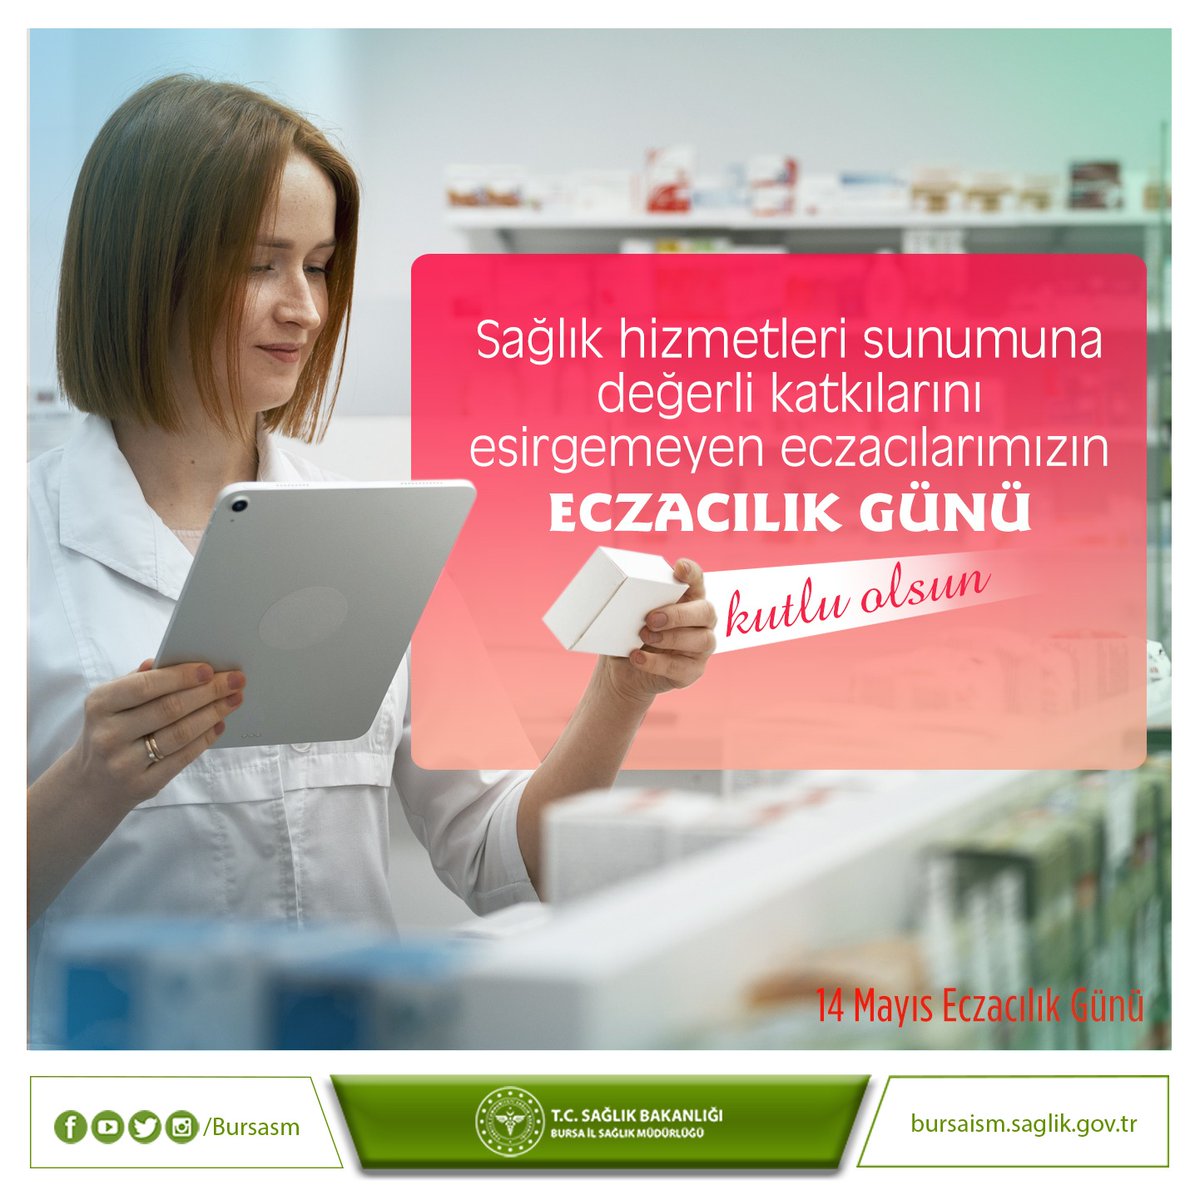 Bursa İl Sağlık Müdürlüğü (@bursaism) on Twitter photo 2024-05-14 06:28:20